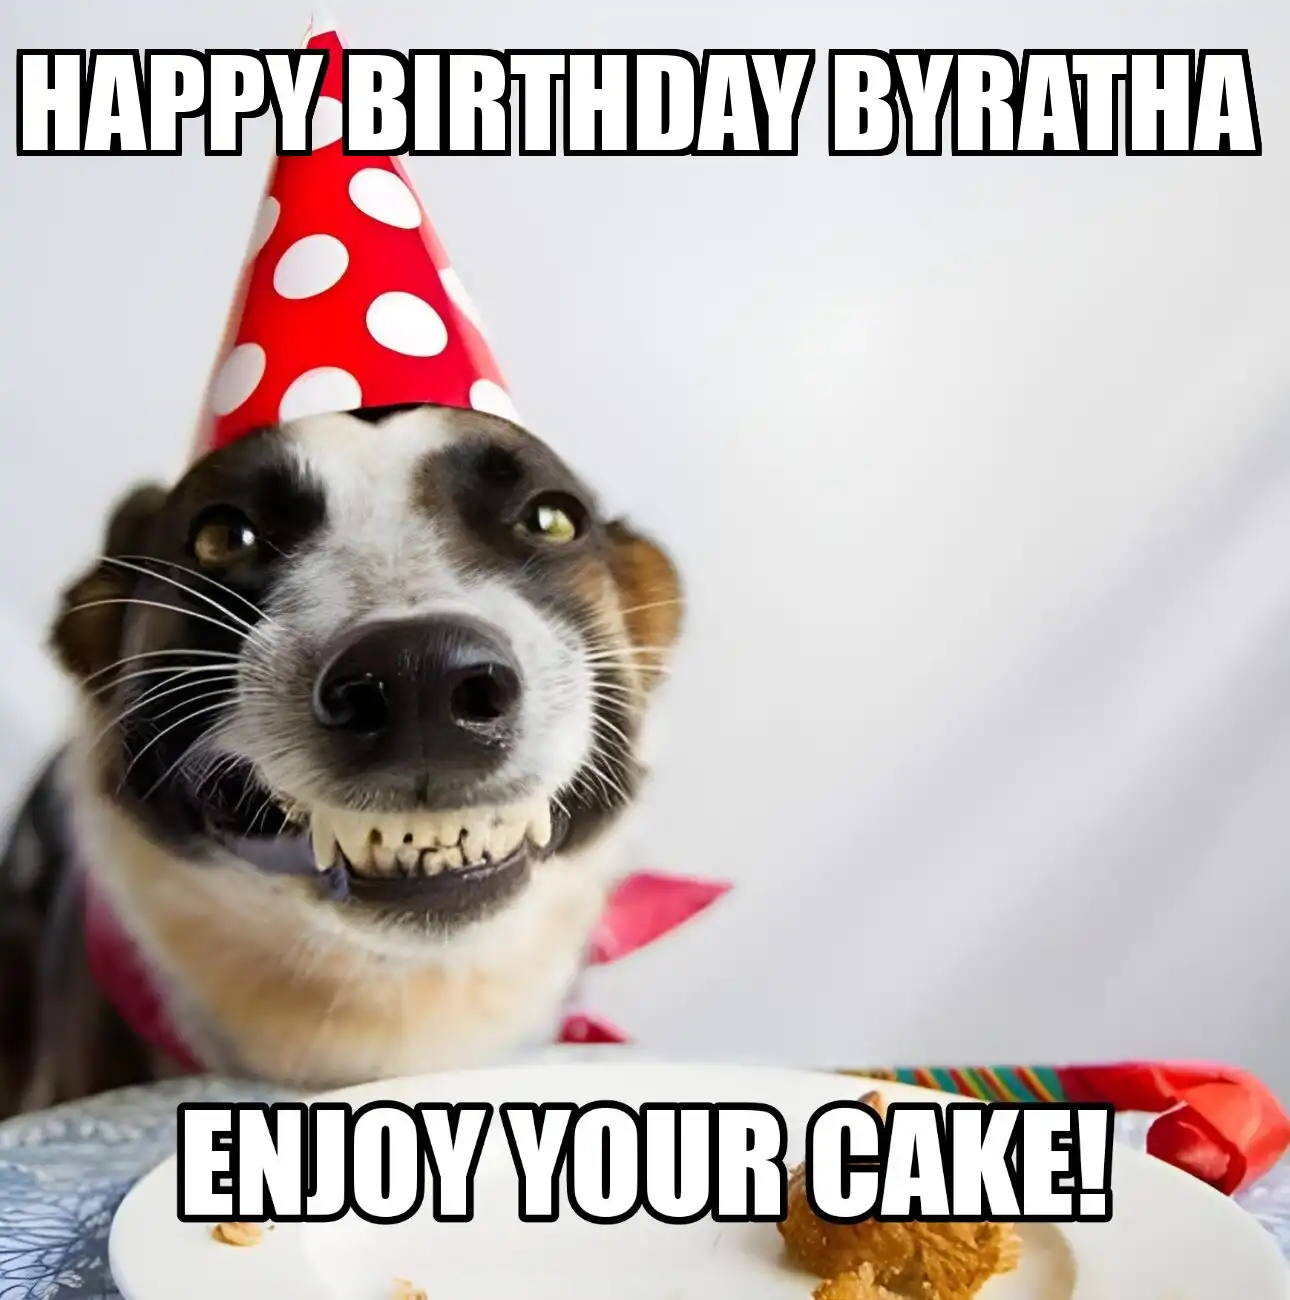 Happy Birthday Byratha Enjoy Your Cake Dog Meme